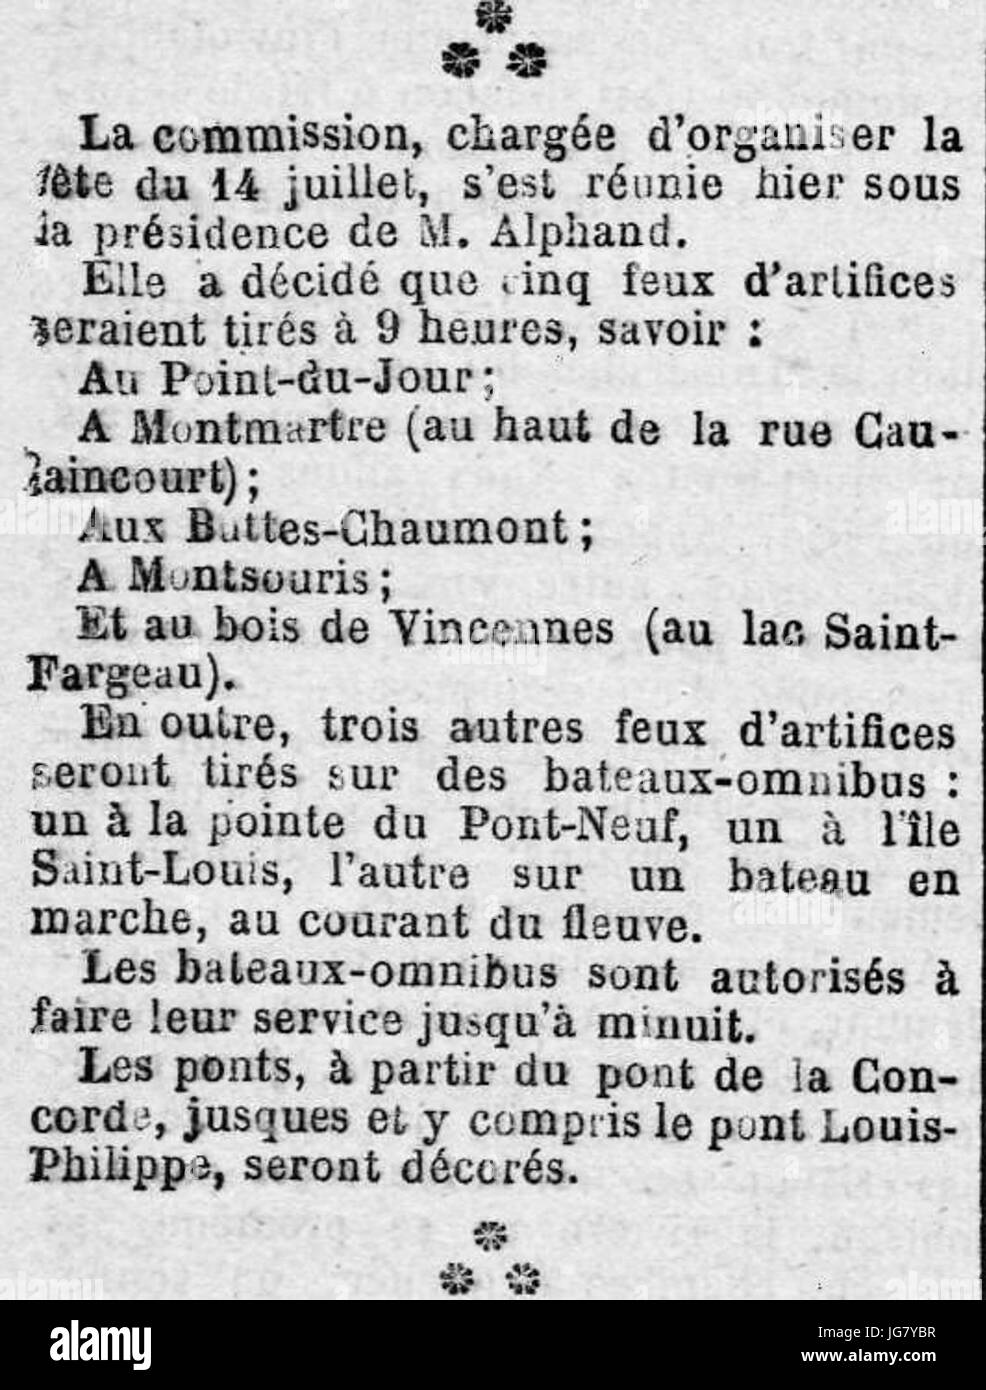 Un Passant. - Les on-dit - Le Rappel - 17 juin 1882 - page 2 - 1ère colonne - Programme des feux d'artifices du 14 juillet 1882 à Paris Stock Photo